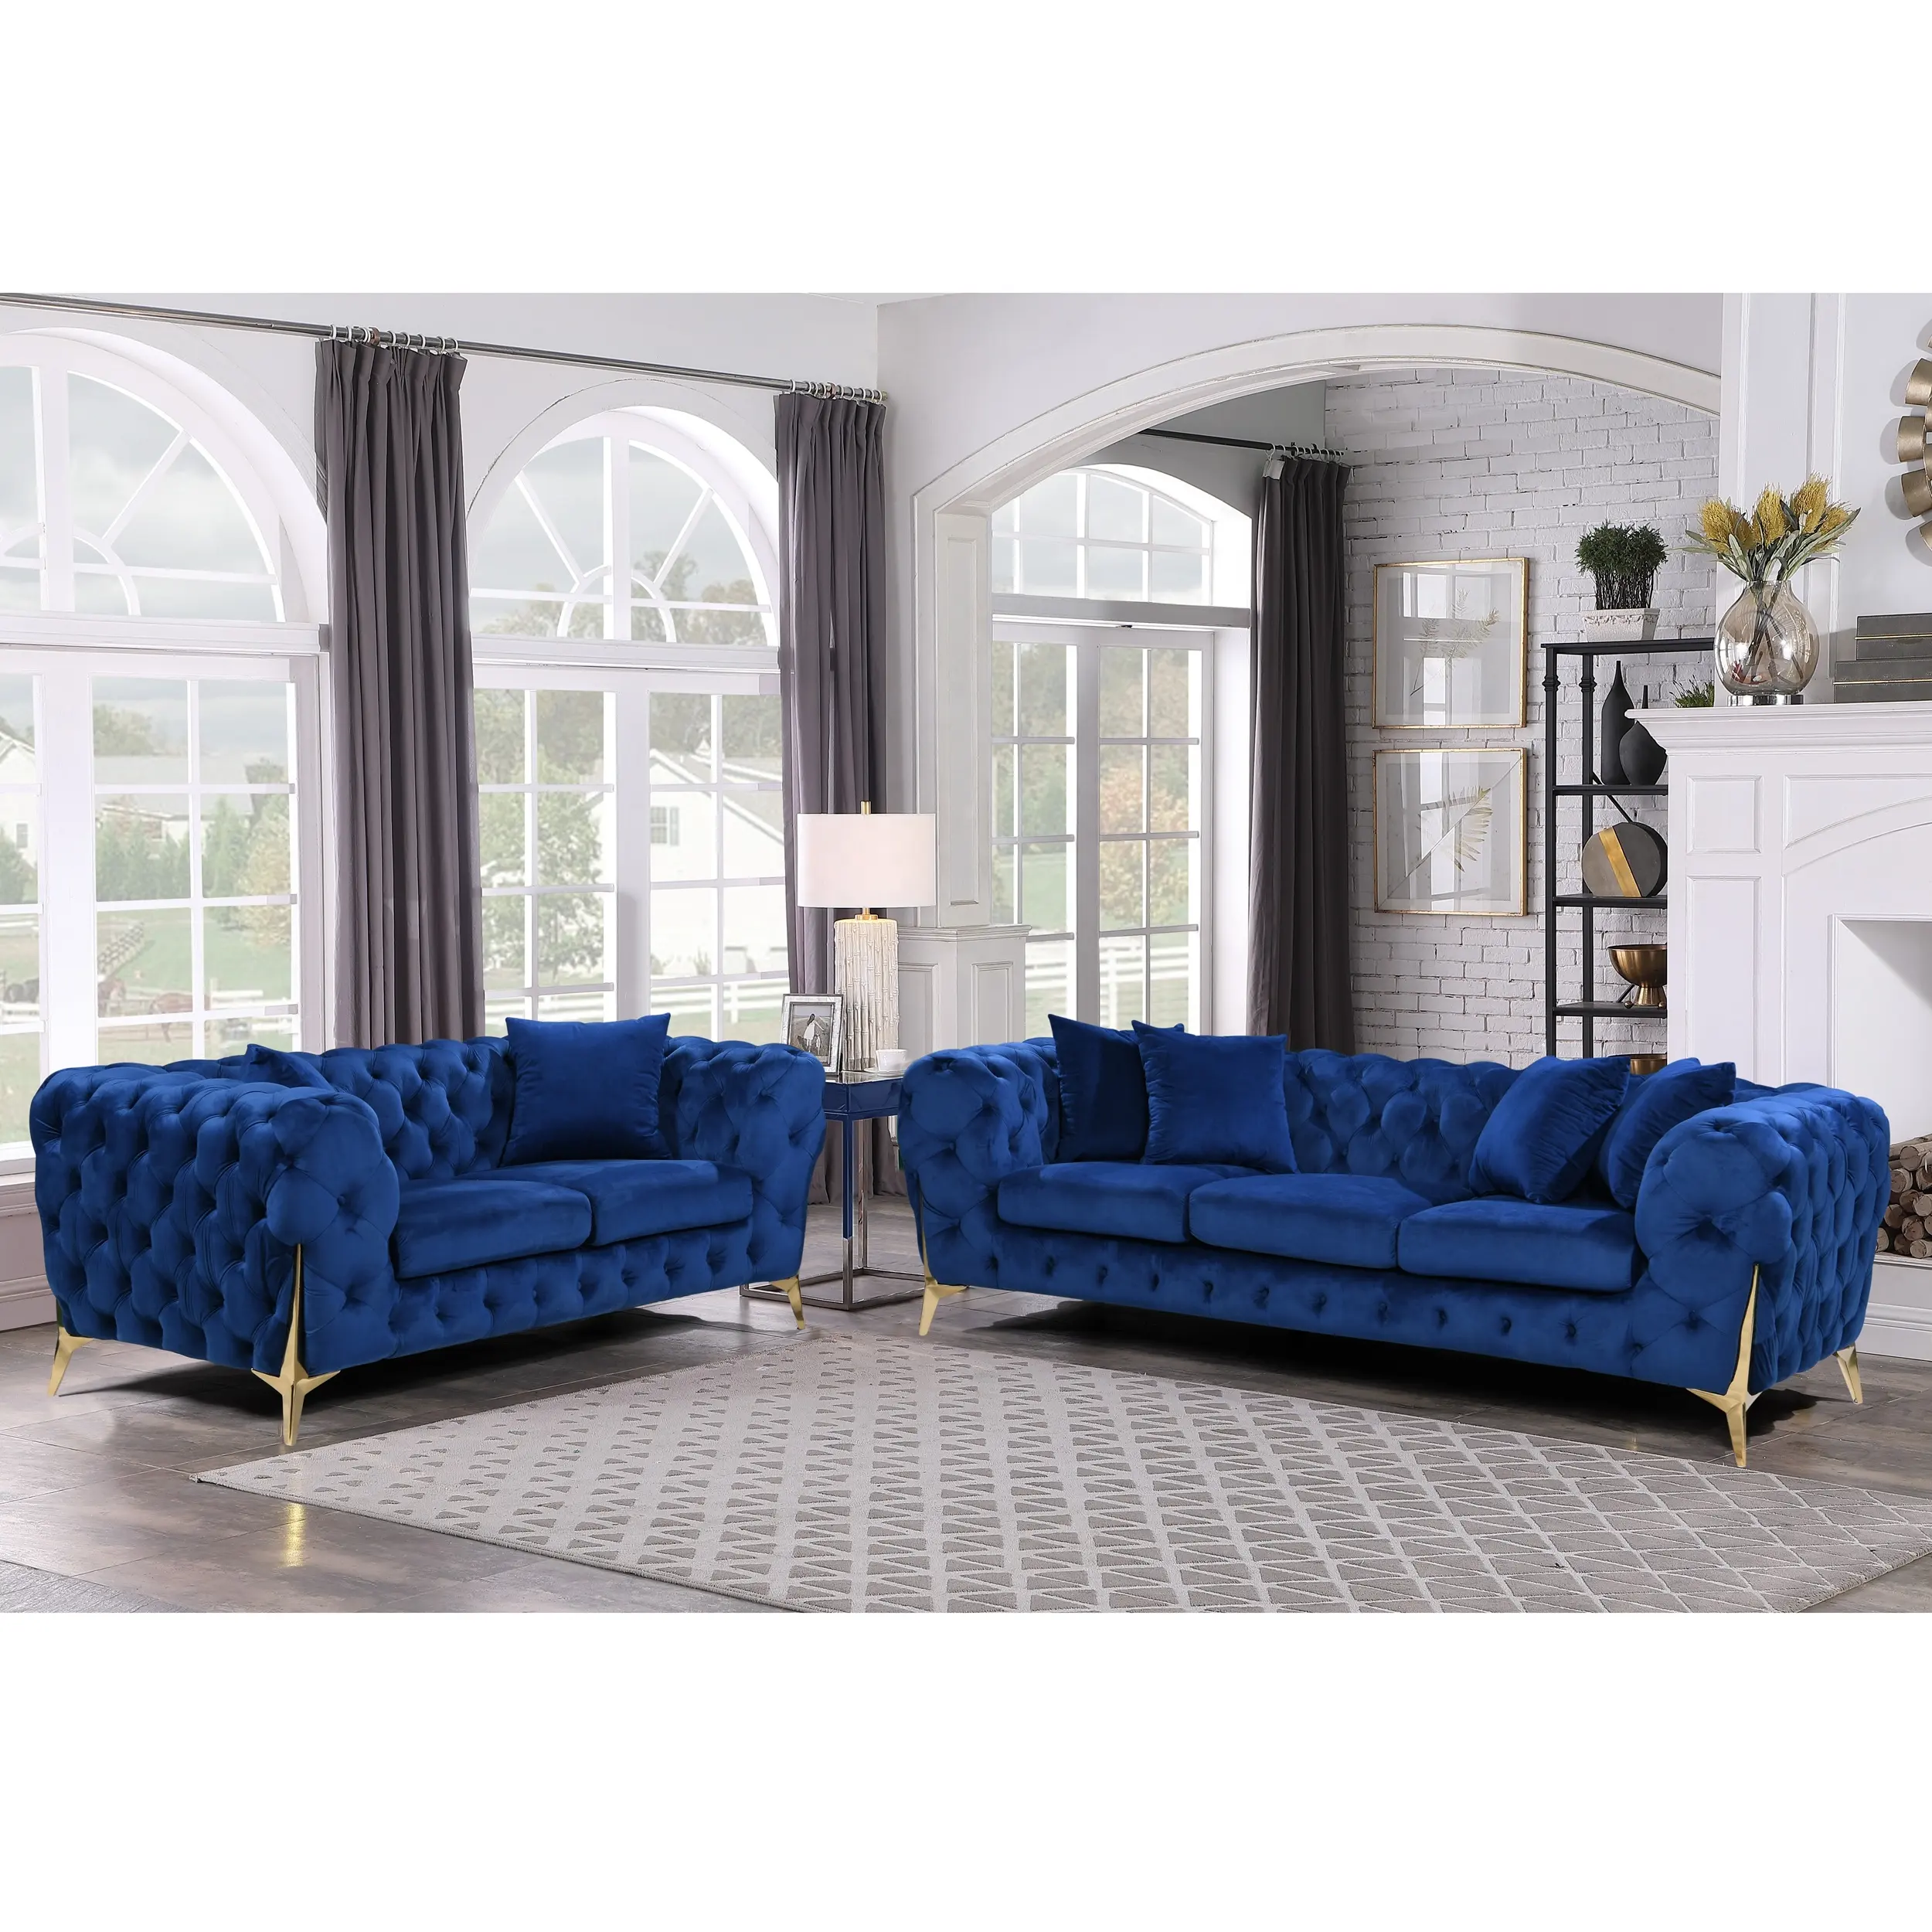 Nova mobília luxuosa de veludo tufado Chesterfield, sofá estofado de 2 lugares para sala de estar, sofá com pernas douradas